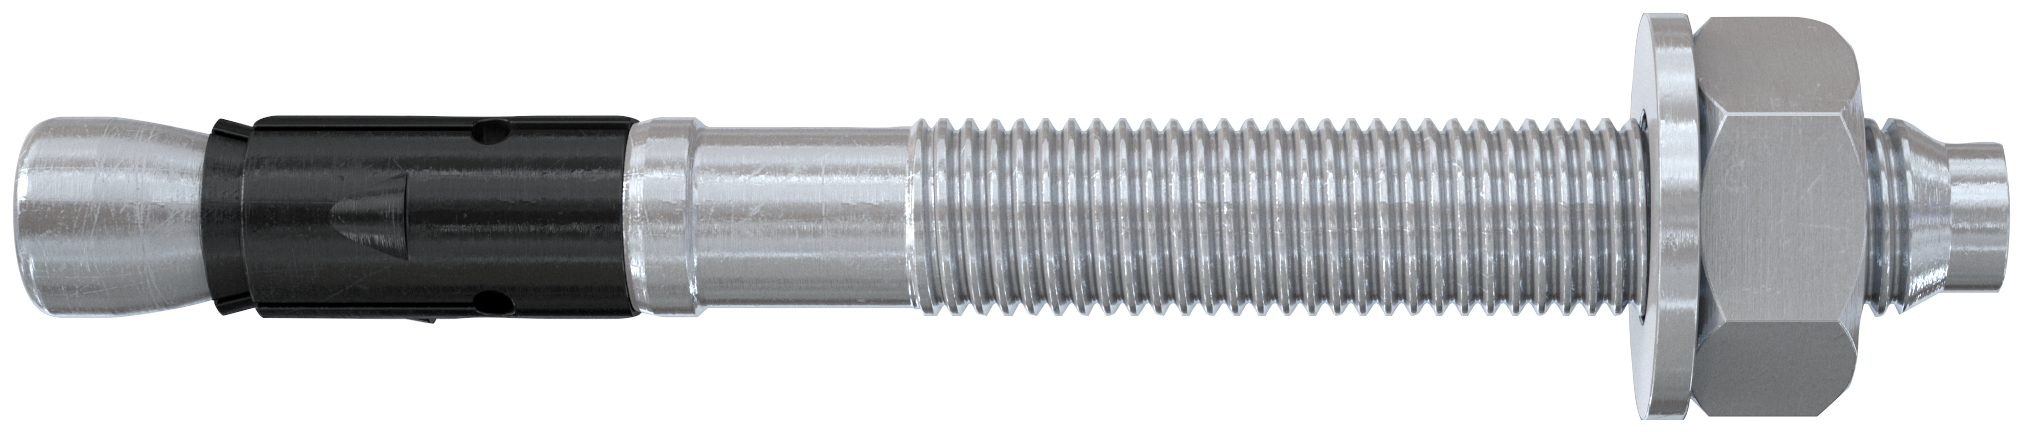 fischer Tassello acciaio FAZ II 10-50 (20 Pz.) L'ancorante ad espansione ad alte prestazioni per carichi statici su calcestruzzo fessurato e per applicazioni sismiche. Versione in acciaio zincato. fie1116